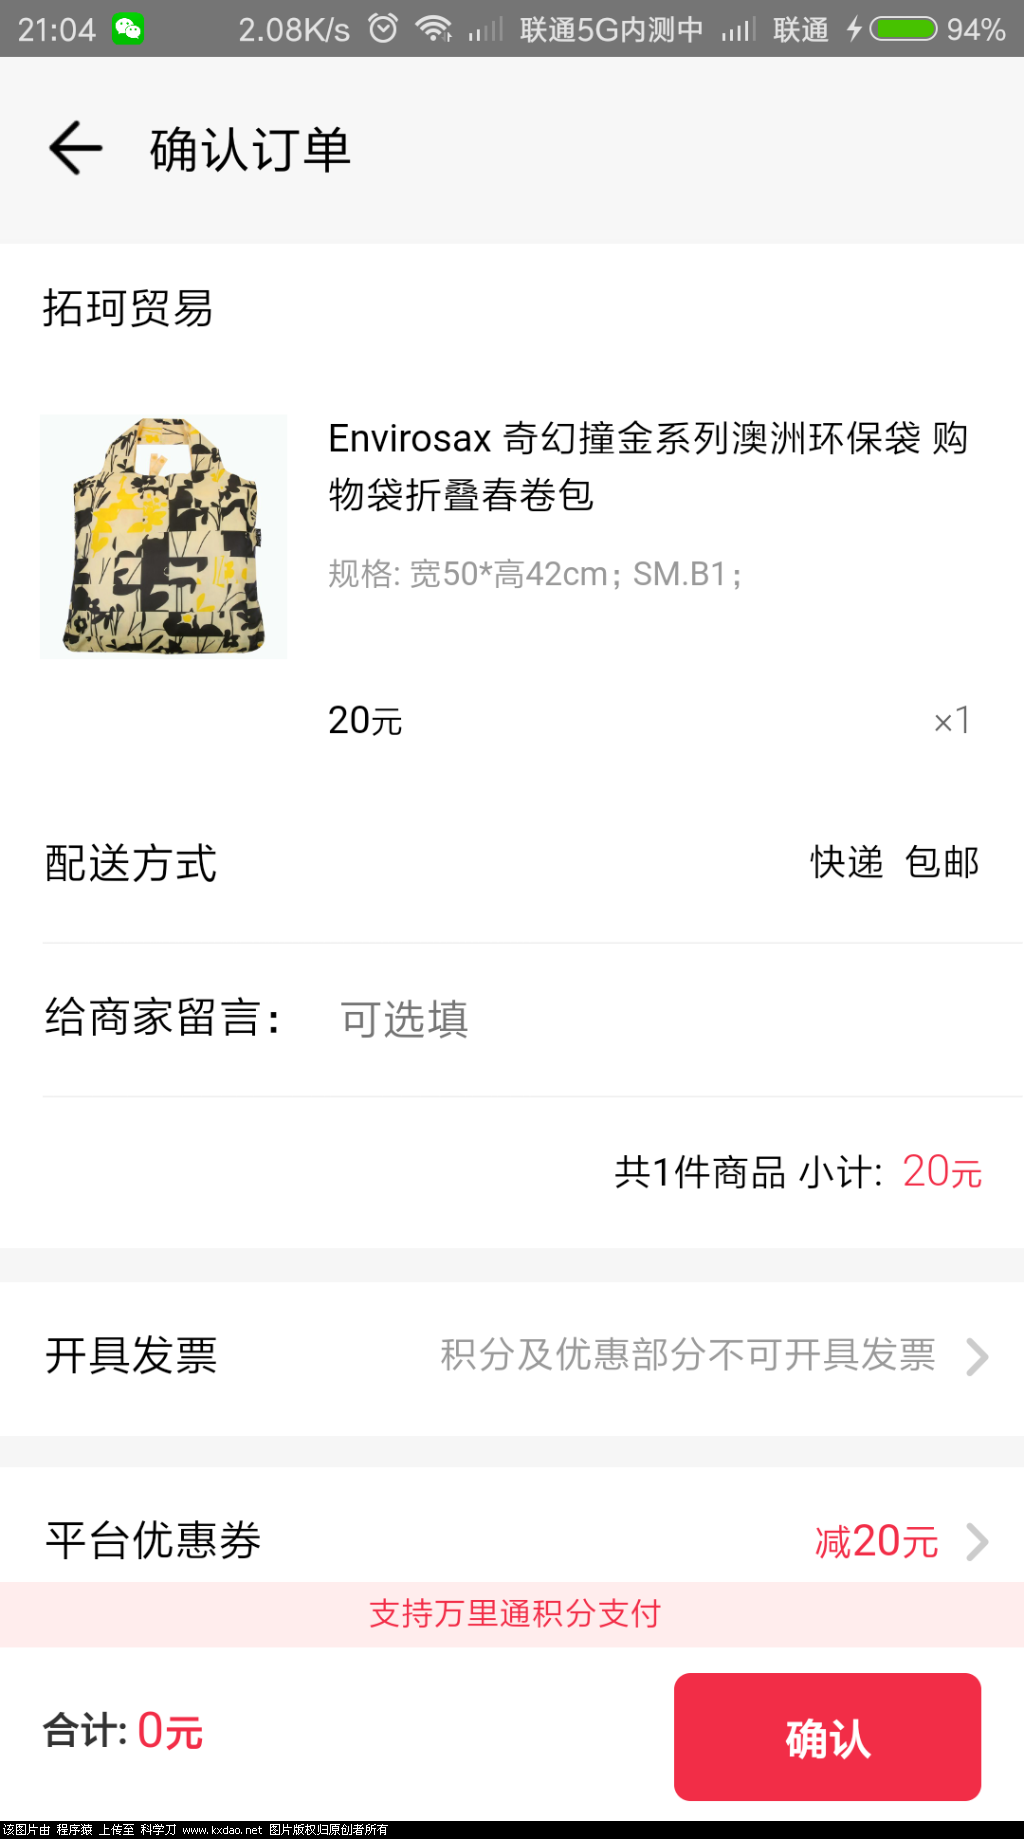 Screenshot_2018-07-24-21-04-18-557_com.paic.zhifu.wallet.activity.png